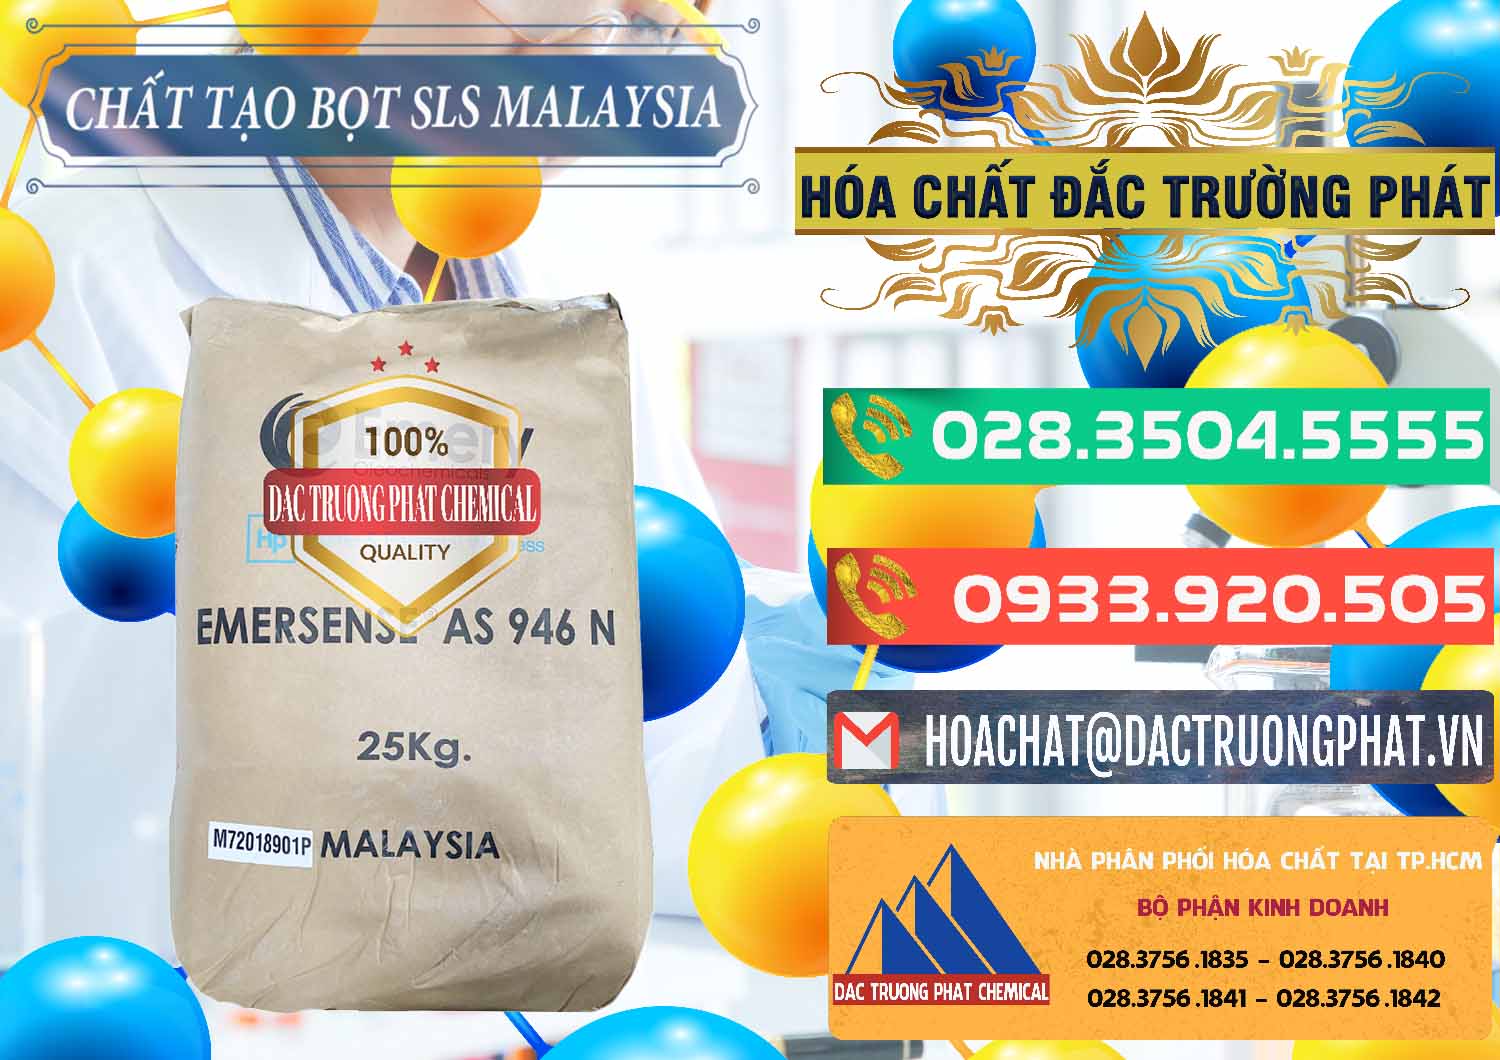 Phân phối và bán Chất Tạo Bọt SLS Emery - Emersense AS 946N Mã Lai Malaysia - 0423 - Đơn vị chuyên cung cấp _ nhập khẩu hóa chất tại TP.HCM - congtyhoachat.com.vn